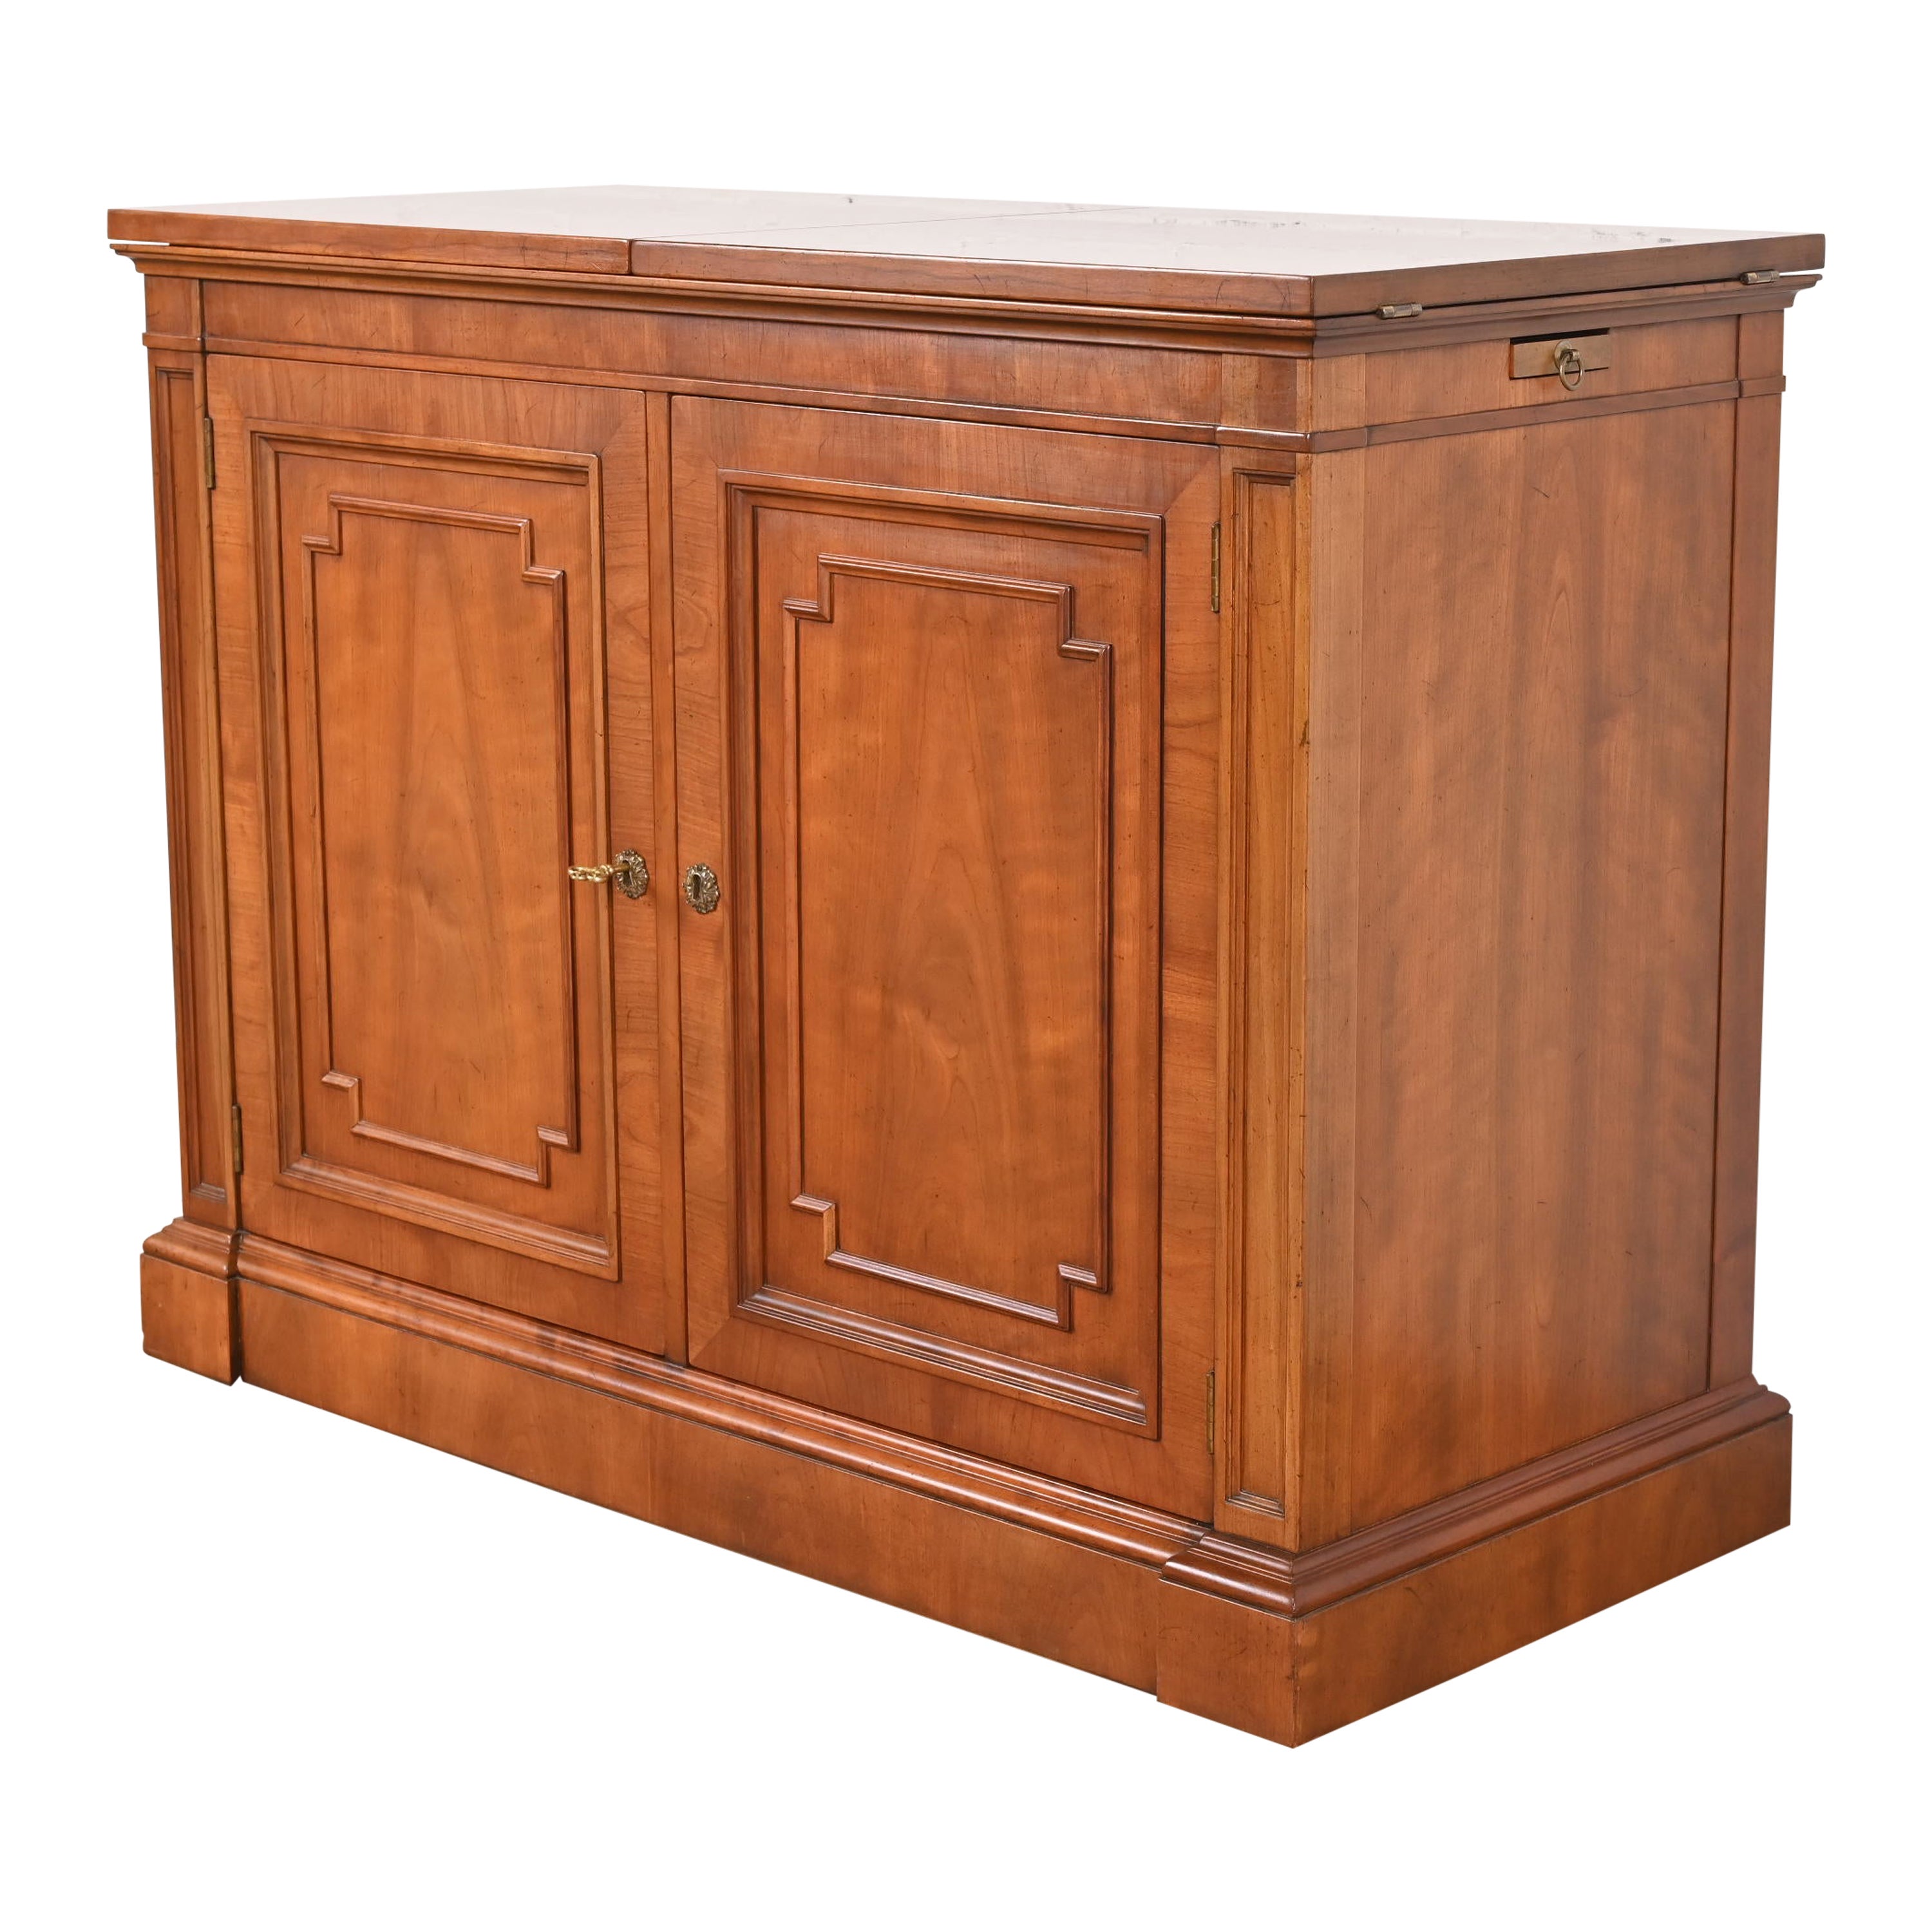 Kindel Furniture French Regency Cherry Wood Flip Top Rolling Bar Cabinet For Sale